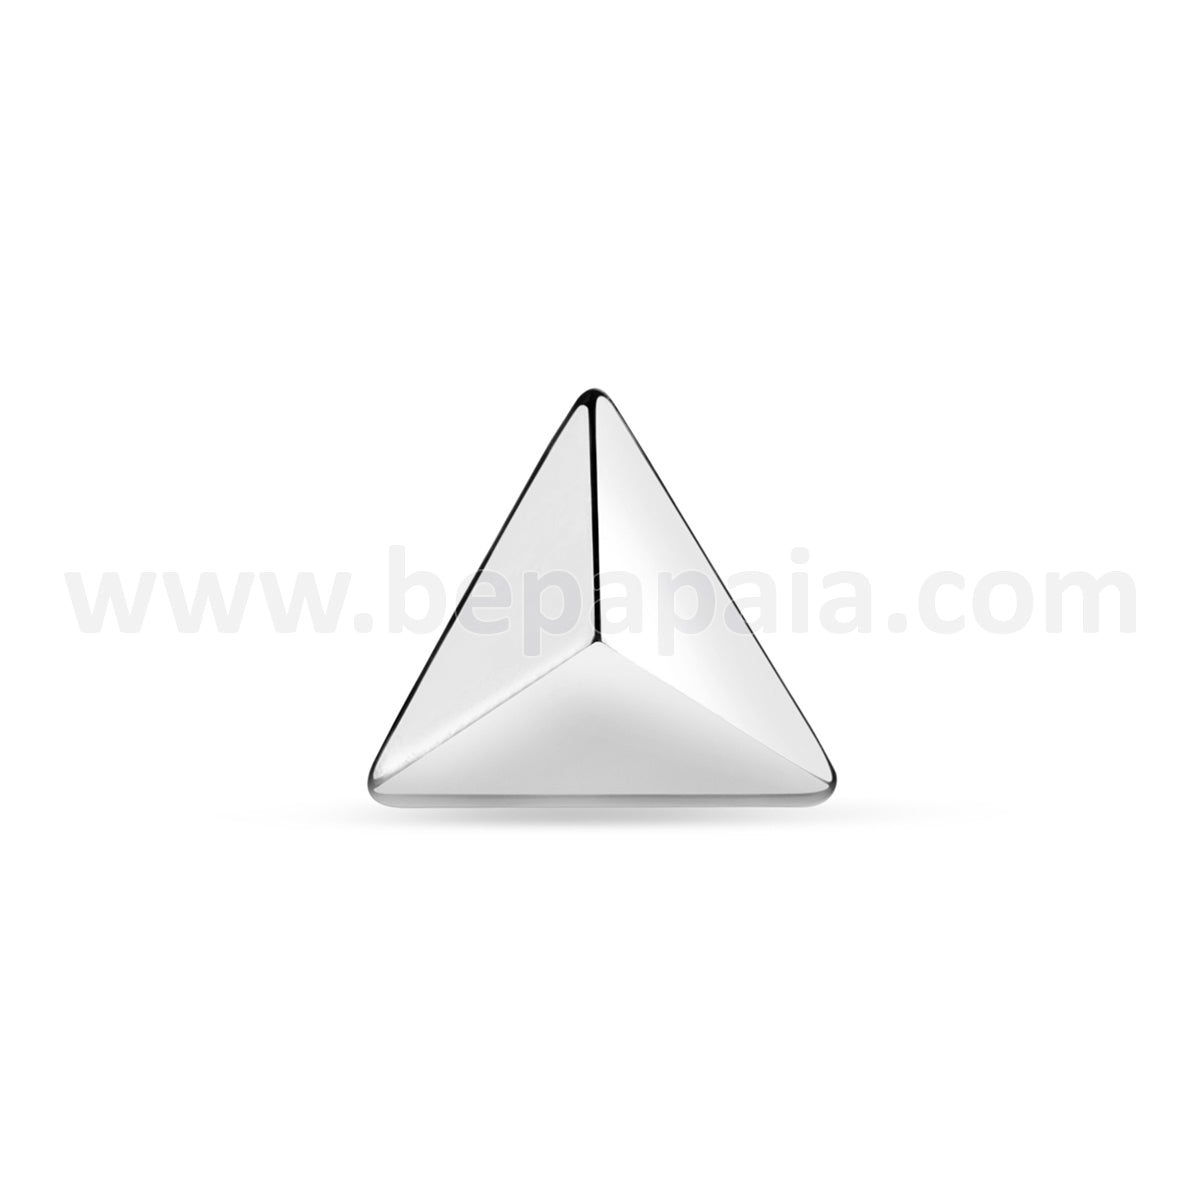 Labret en forma de pirámide